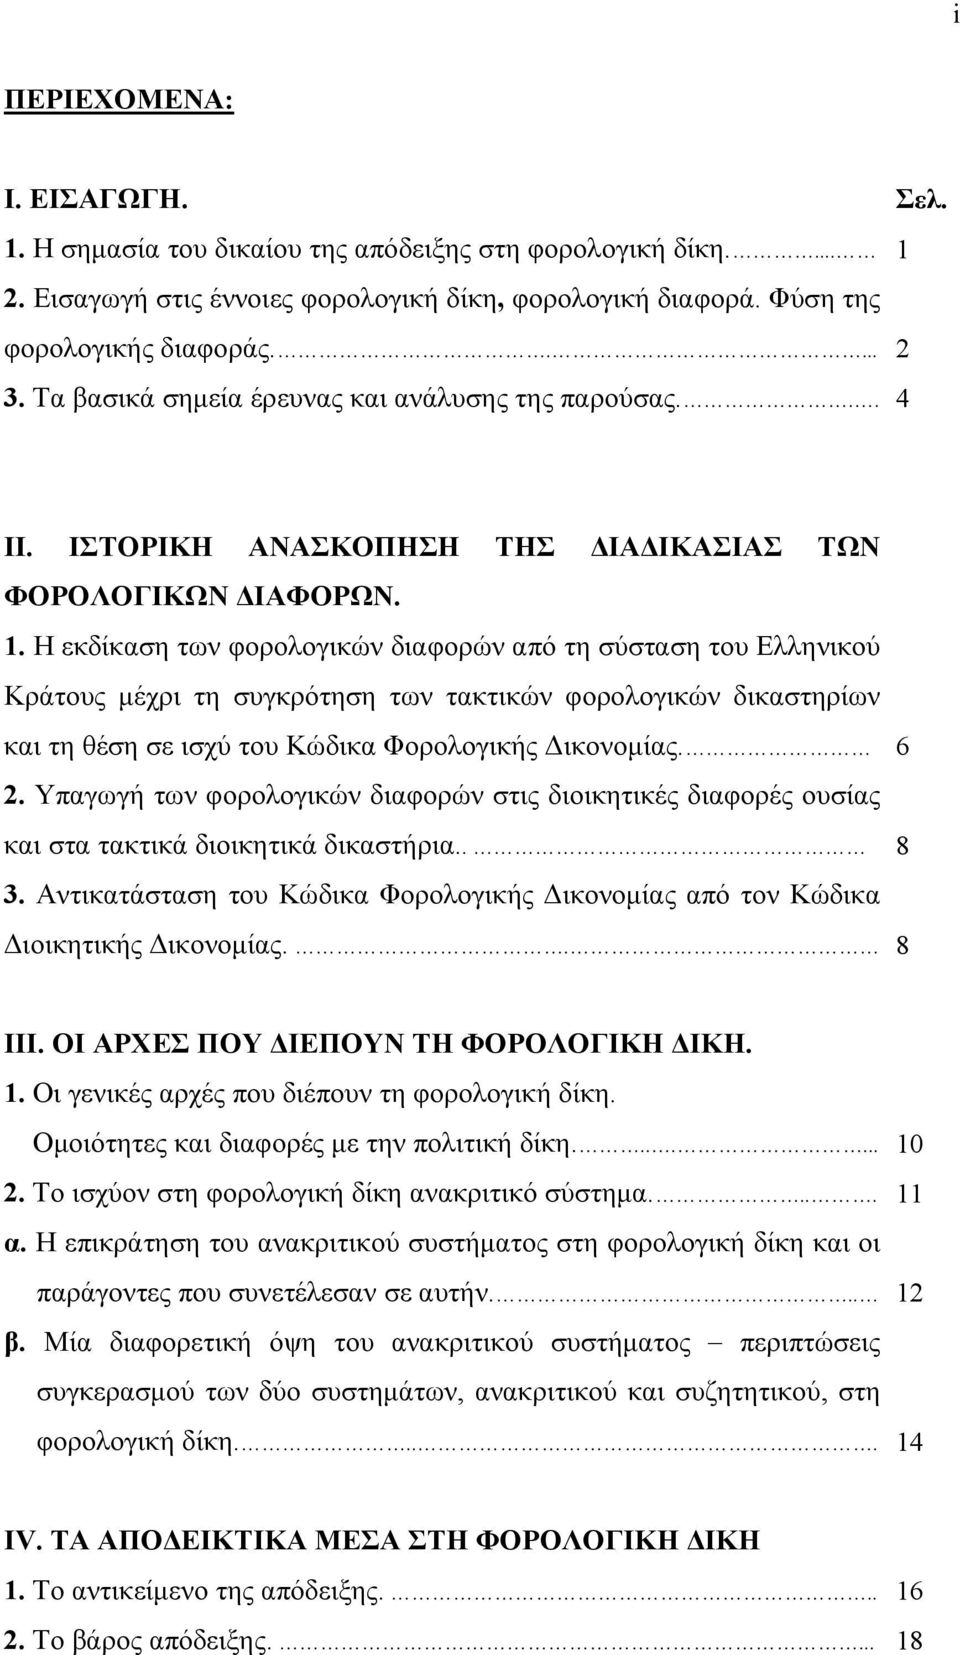 Η εκδίκαση των φορολογικών διαφορών από τη σύσταση του Ελληνικού Κράτους μέχρι τη συγκρότηση των τακτικών φορολογικών δικαστηρίων και τη θέση σε ισχύ του Κώδικα Φορολογικής Δικονομίας. 6 2.